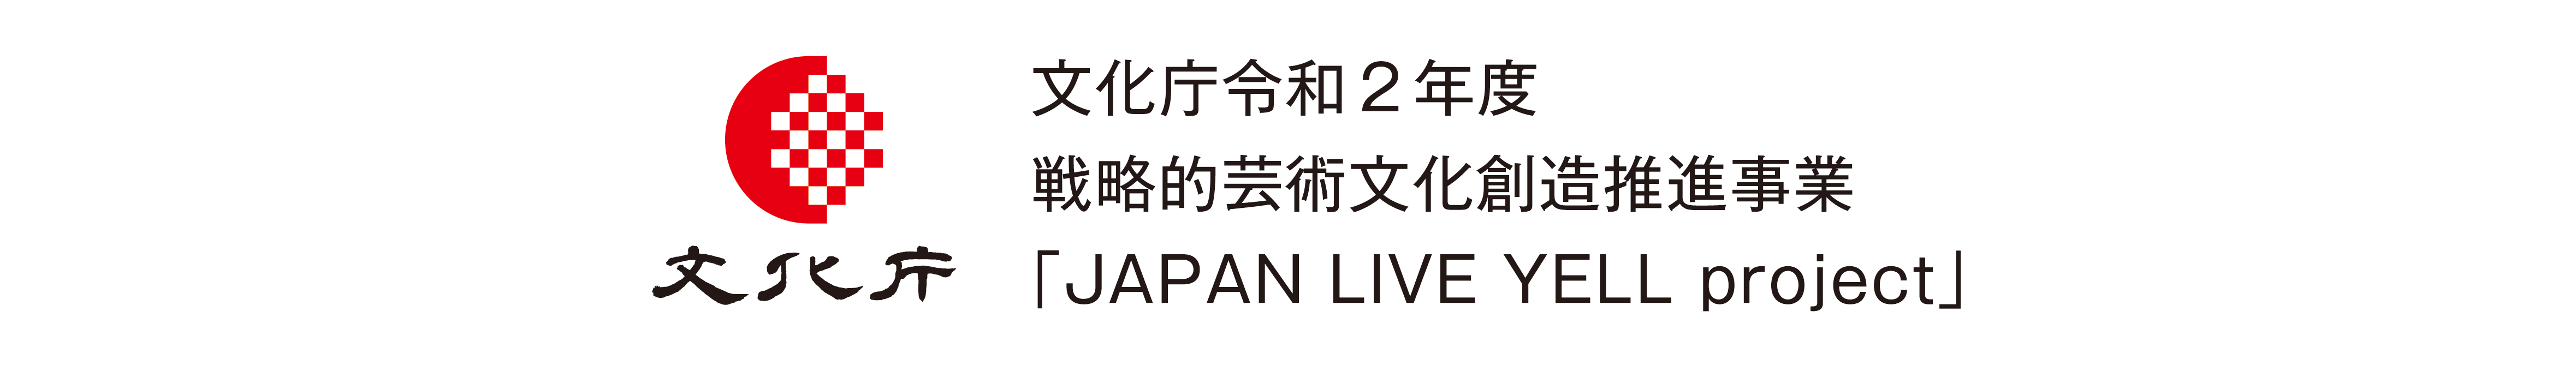 文化庁 JAPAN LIVE YELL project